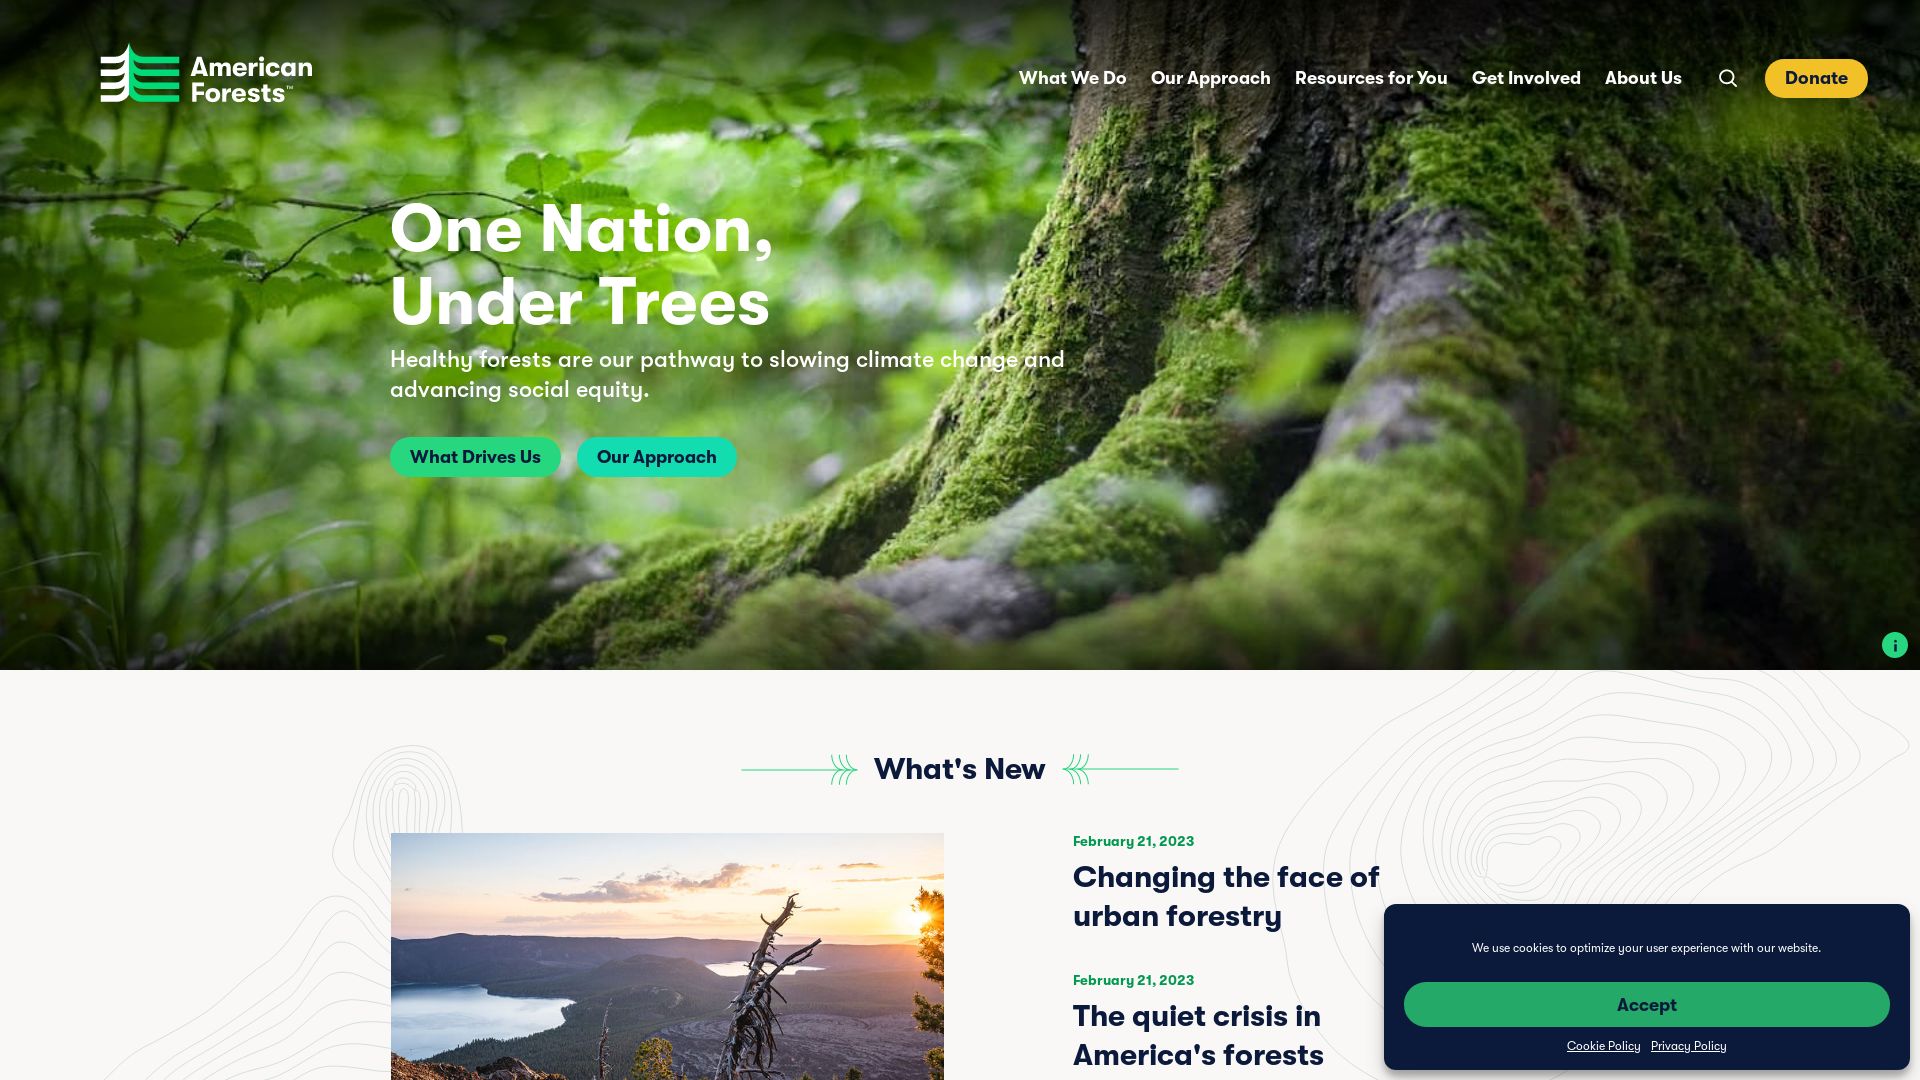 Estado web americanforests.org está   ONLINE